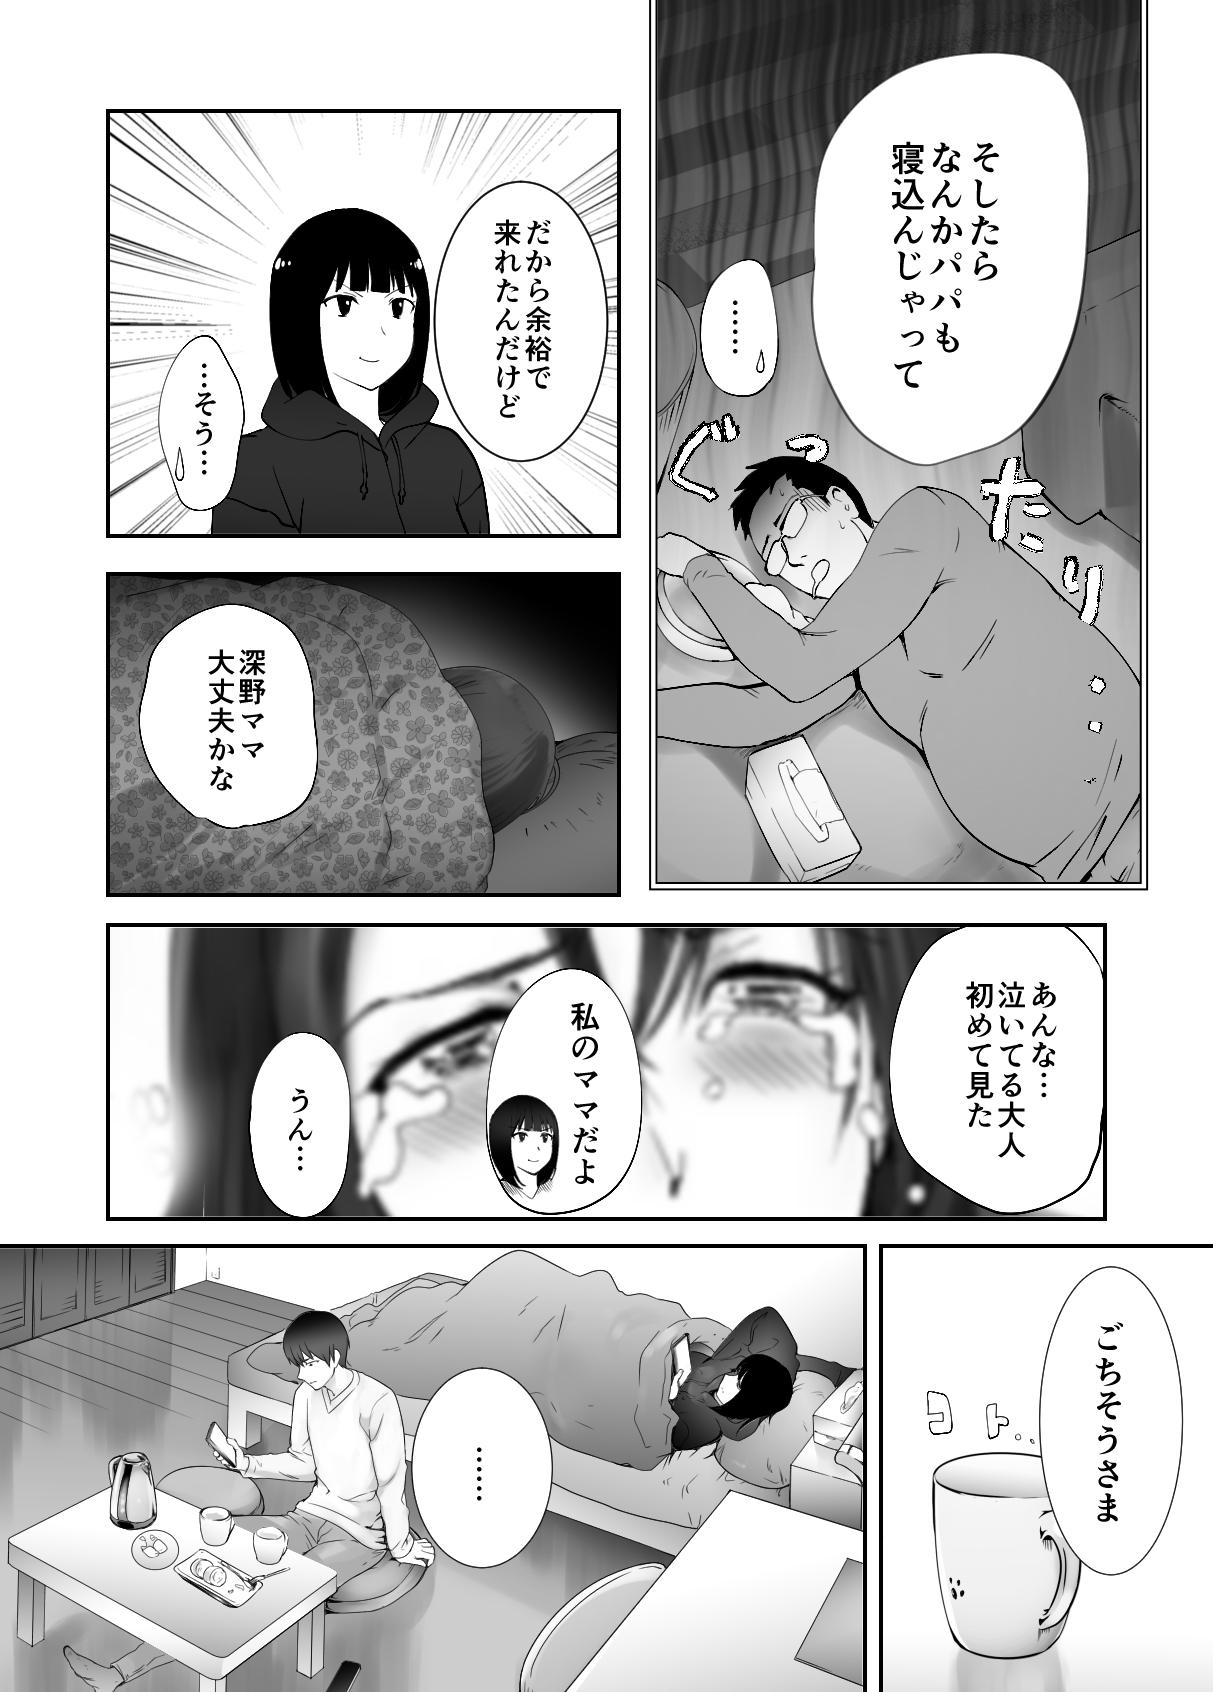 Hot Fuck Osananajimi ga Mama to Yatte Imasu. 9 - Original Public Nudity - Page 9